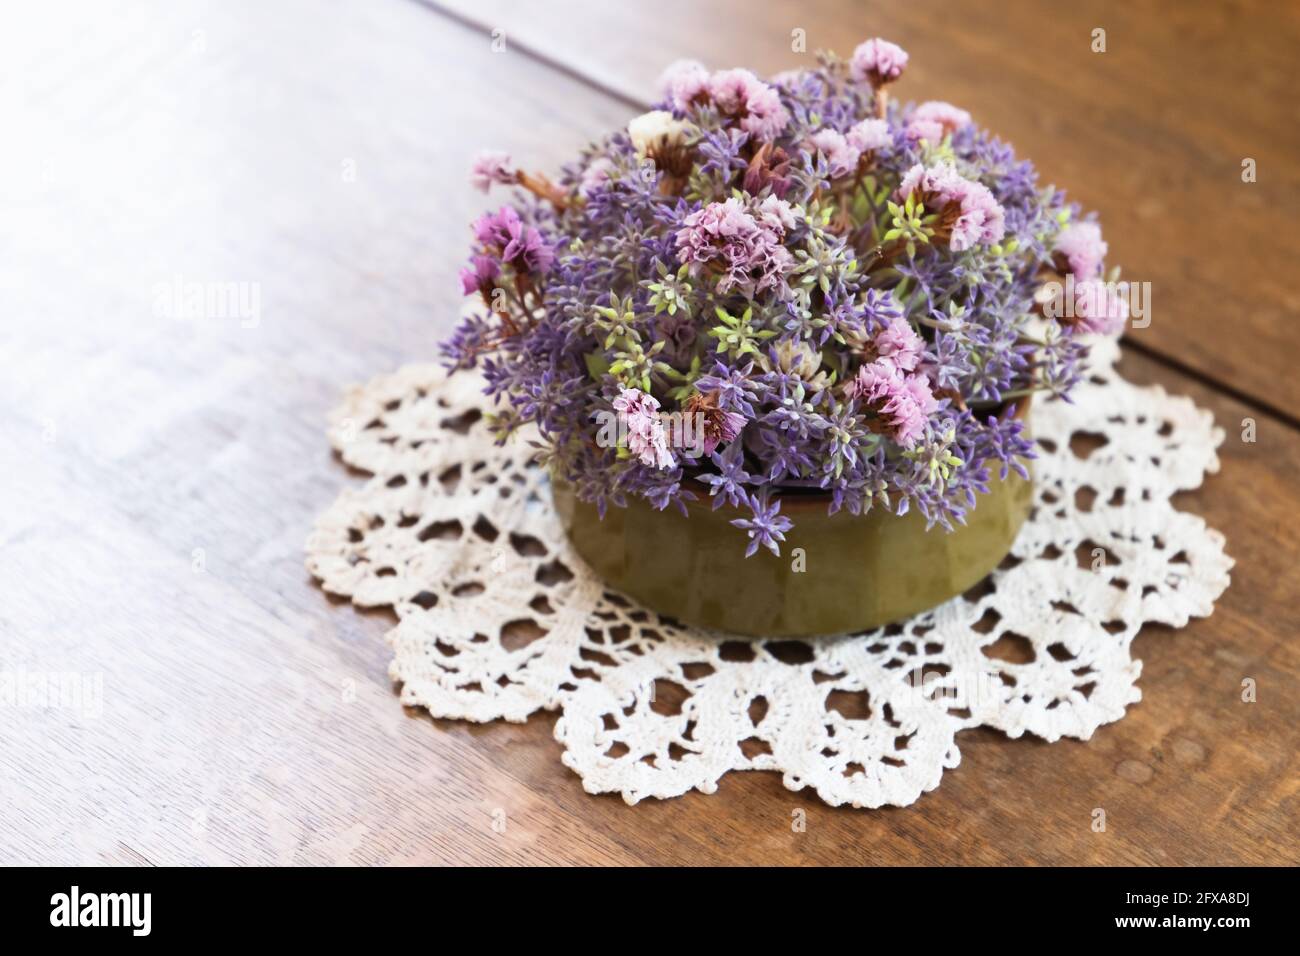 Runde Vase mit Blumenstrauß stehen auf einem Holzschreibtisch, Nahaufnahme Foto mit selektivem weichen Fokus Stockfoto